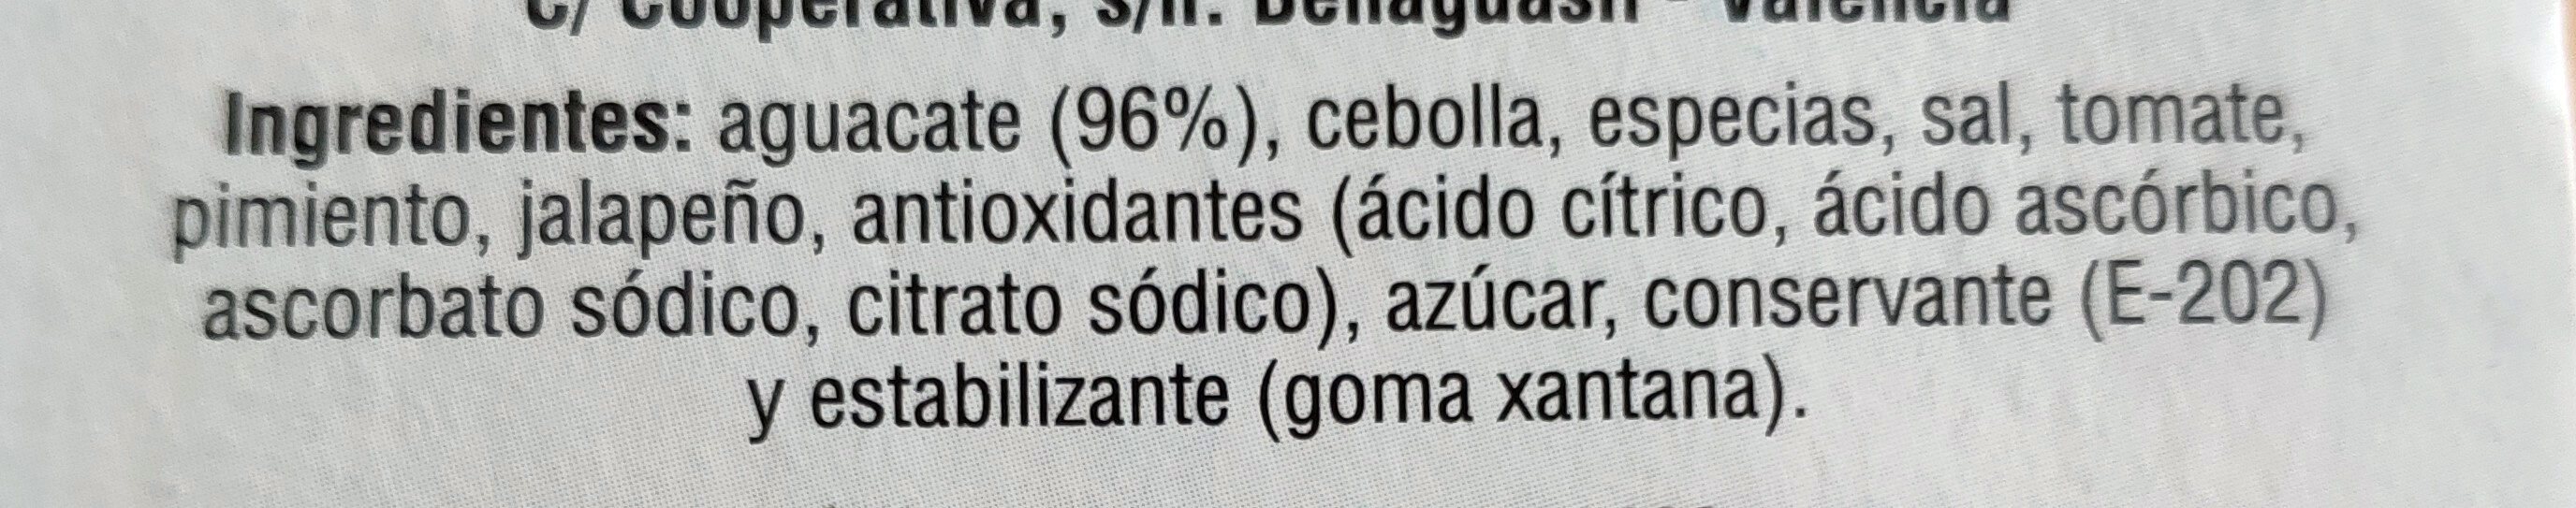 Guacamole - Ingredients - es